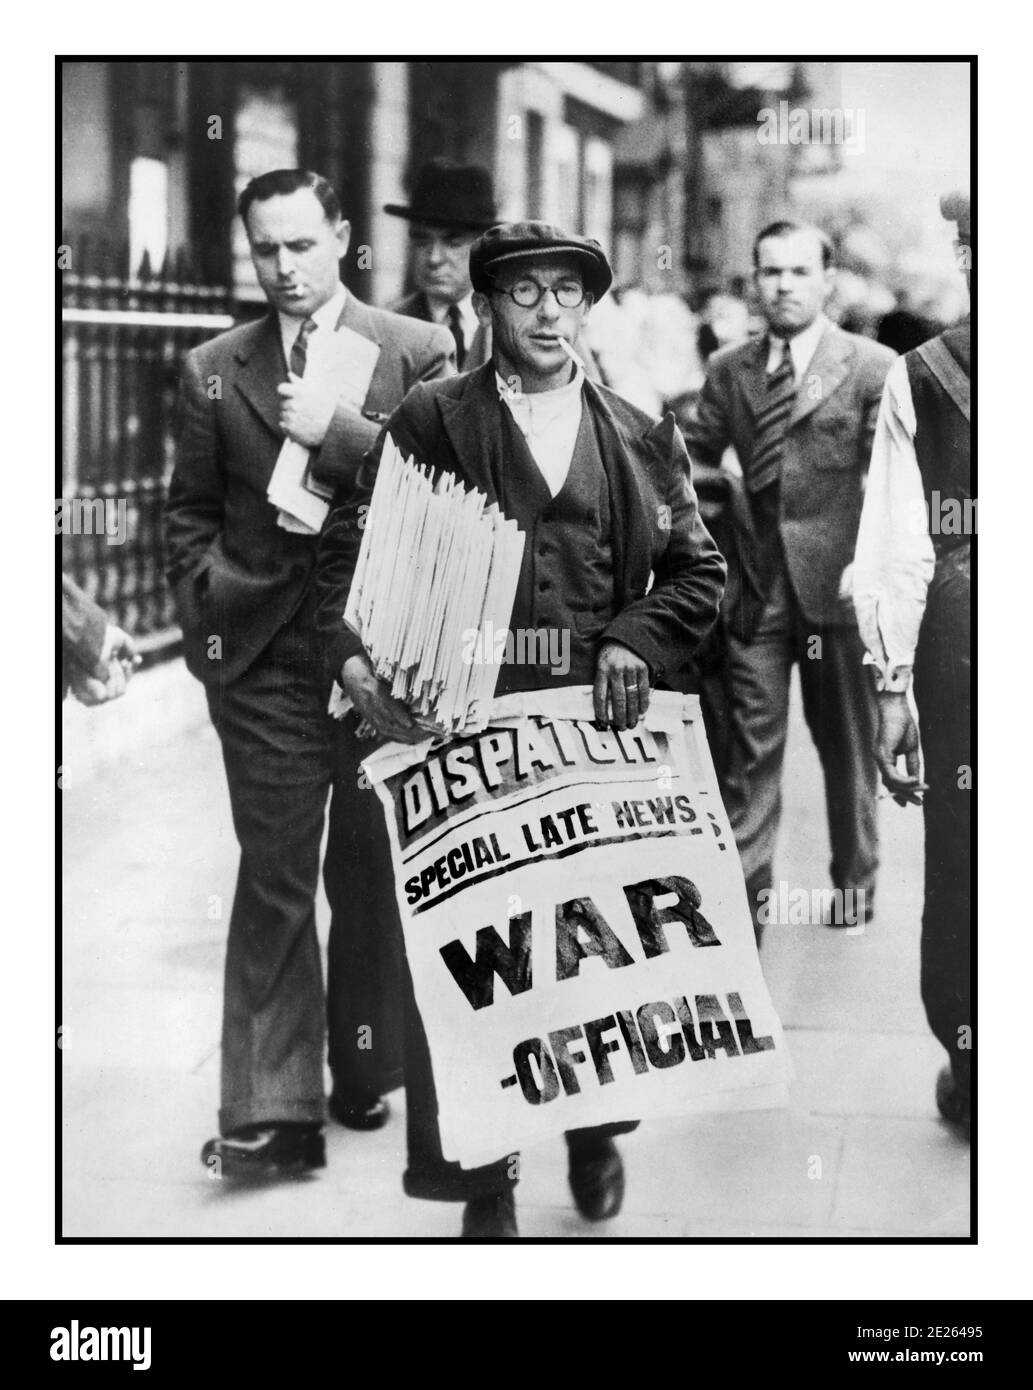 NEWS TITRE WAR 1939 WW2 UK News vendor pour le Londres Dispatch journal holding poster annonçant "L'OFFICIEL DE GUERRE" le début De la Seconde Guerre mondiale en Grande-Bretagne Seconde Guerre mondiale Banque D'Images